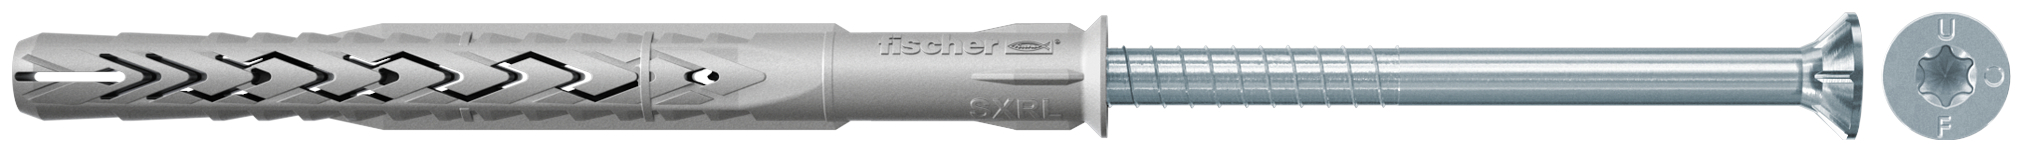 fischer Tasselli prolungati SXRL 10X120 T (1 Pz.) Tassello prolungato in nylon con marcatura CE con vite premontata T.S.P. impronta torx fie2367